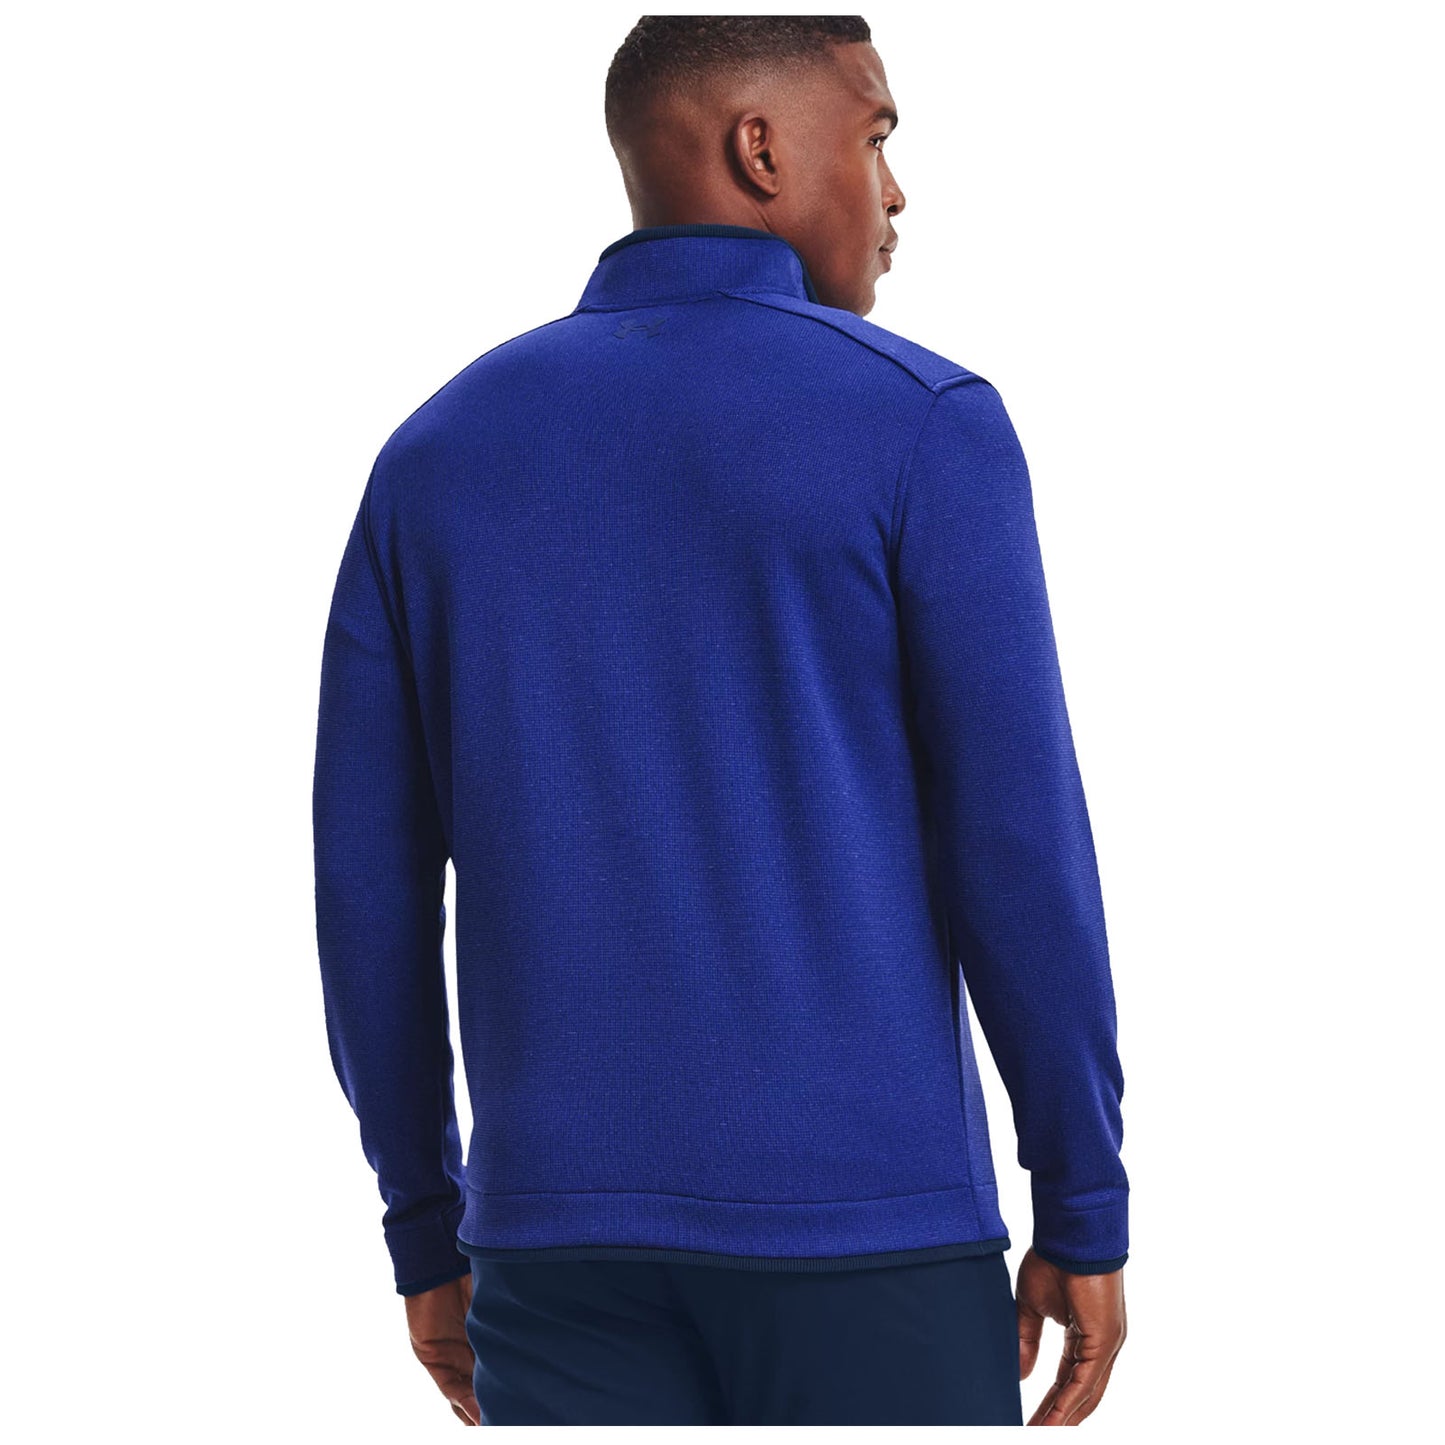 Under Armour Mens Sweater Fleece Half Zip Top